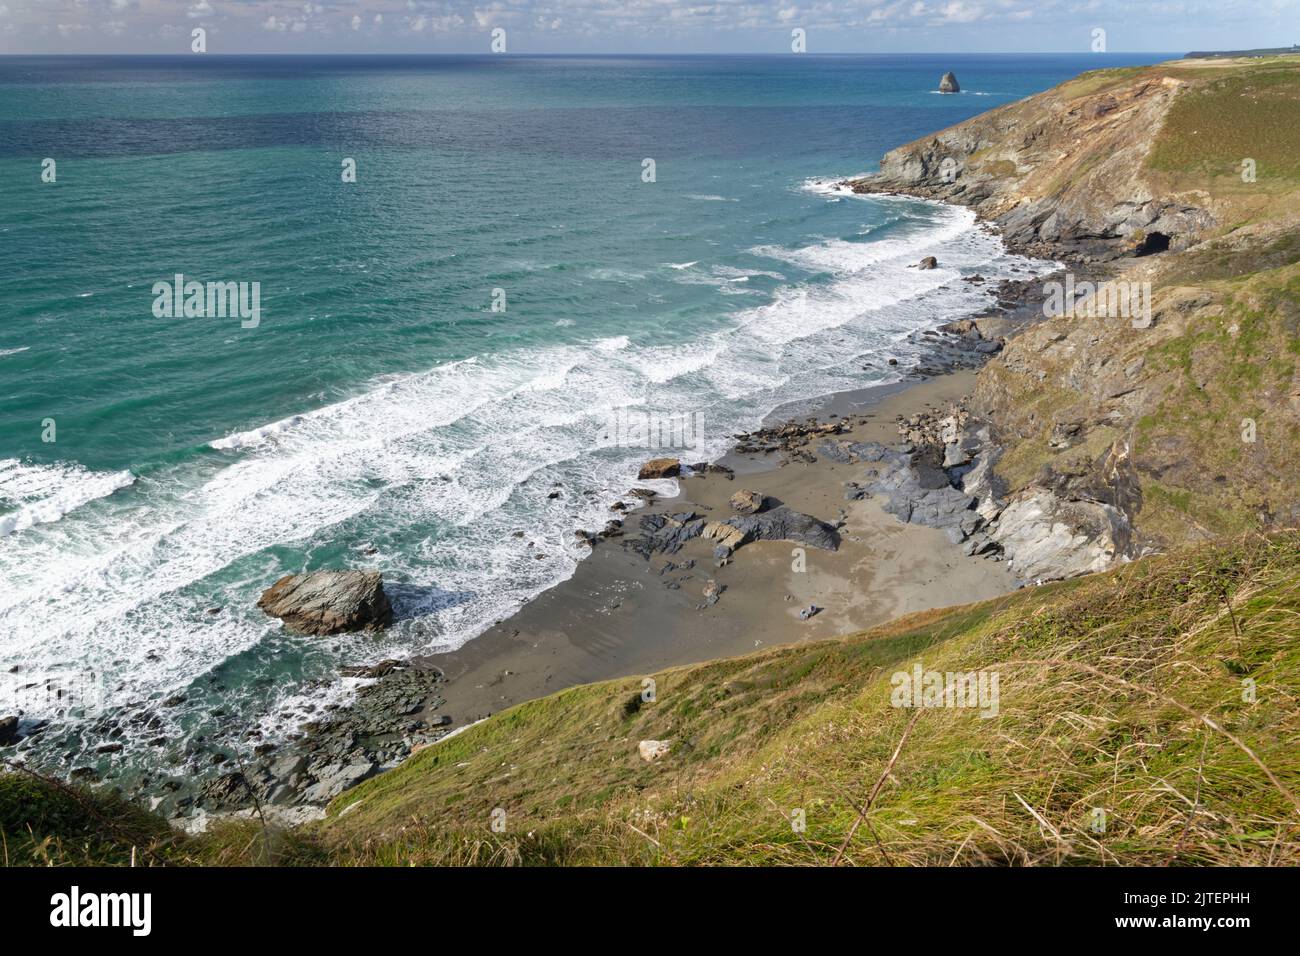 Vue d'ensemble de la plage de Tregardock depuis Tregardock Cliff, près de Delabole, Cornwall, Royaume-Uni, septembre 2021. Banque D'Images